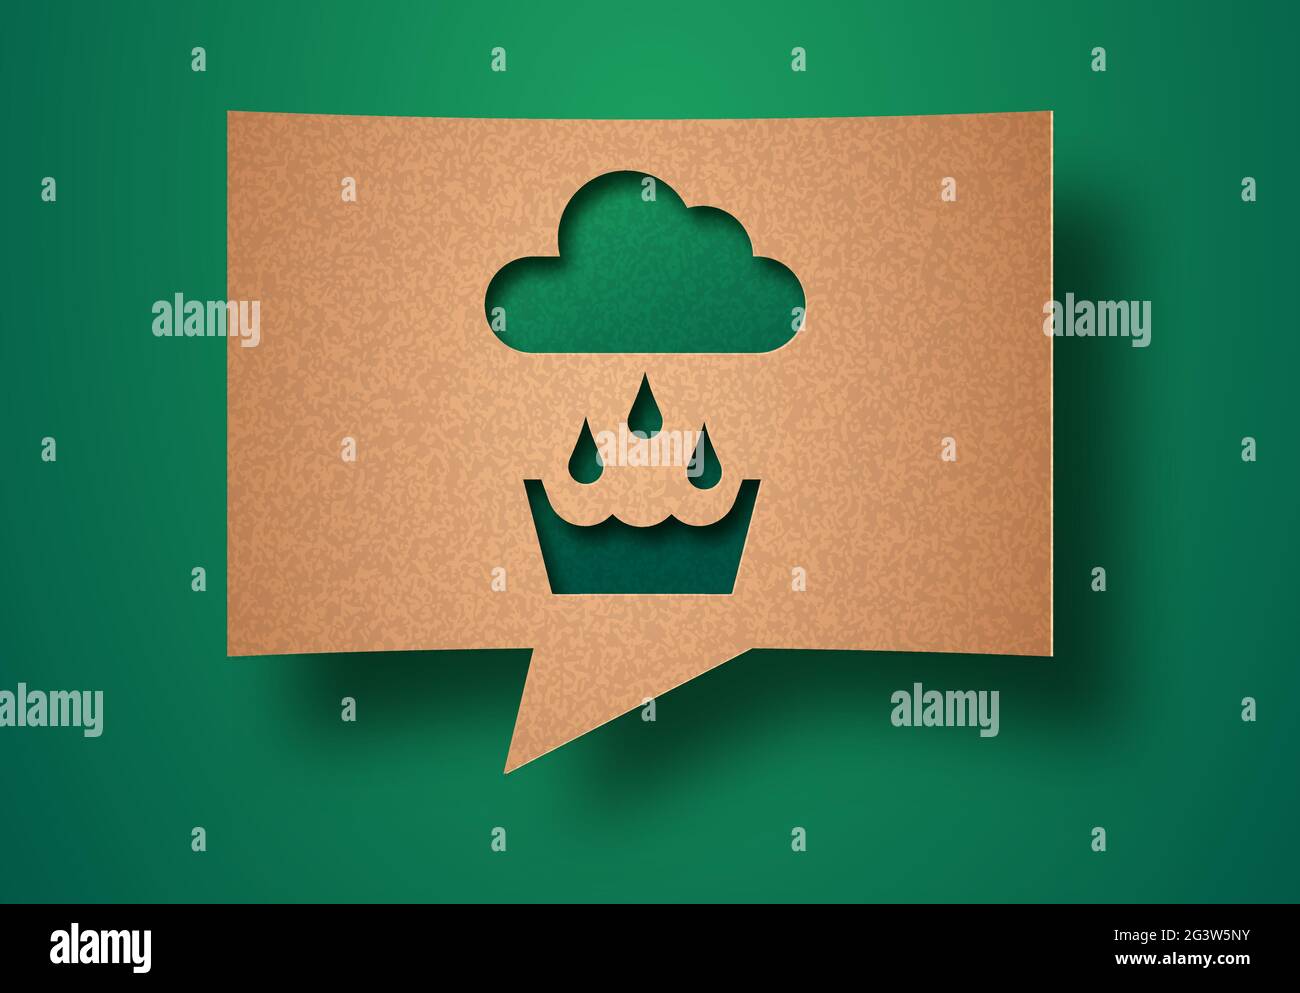 Regenwassernutzung papiergeschnittenes Illustrationskonzept mit grünen Pflanzenblättern, die in der Wolke wachsen. 3D Regenwasser Recycling Ausschnitt Handwerk Design in recycl Stock Vektor